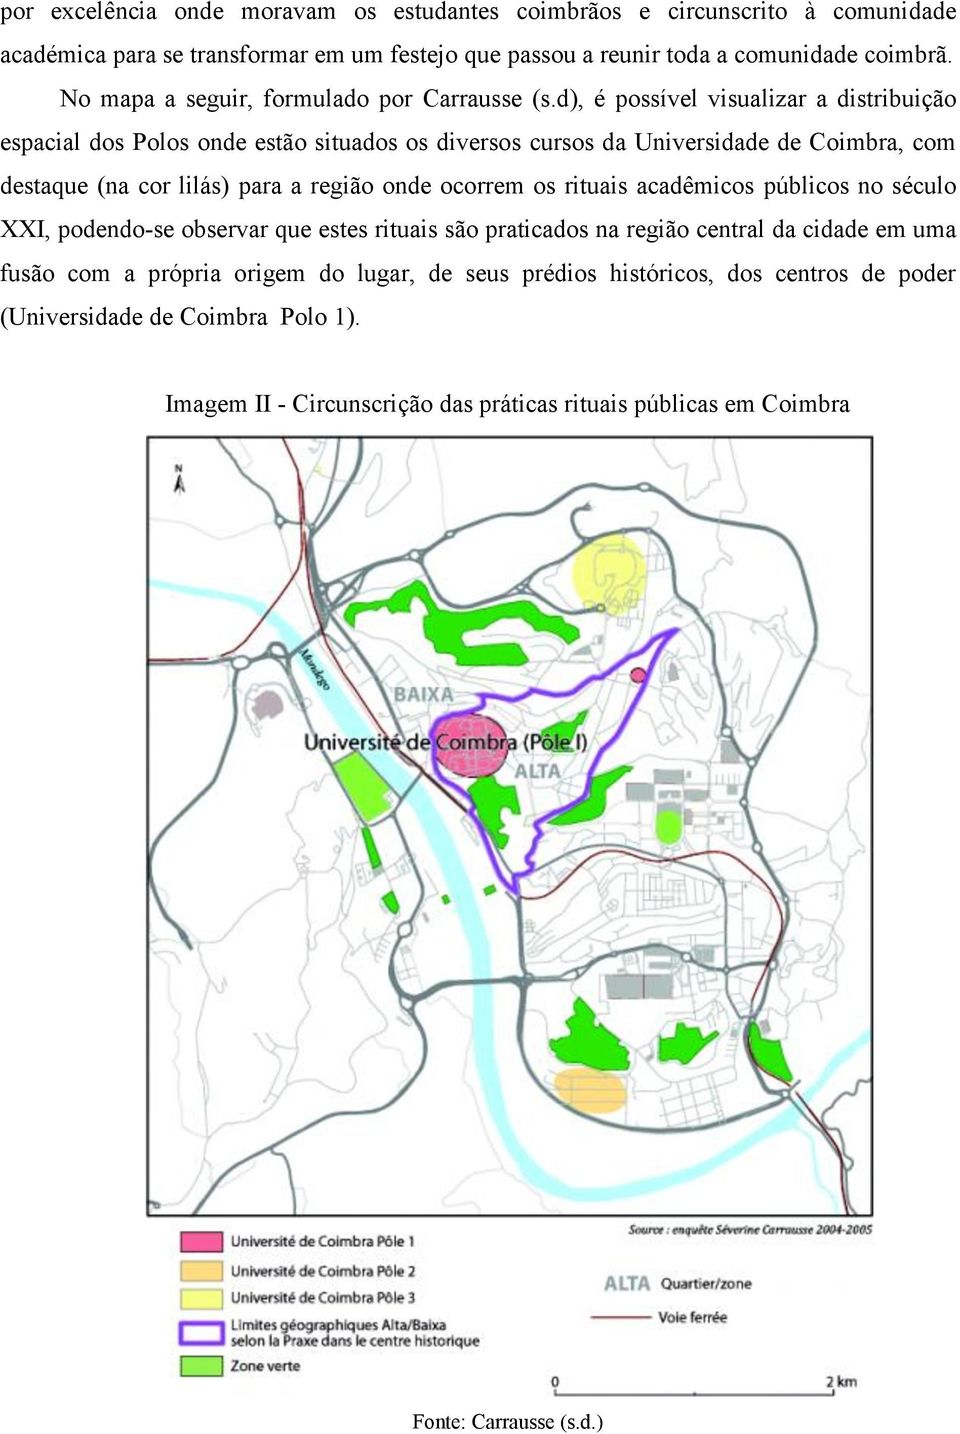 d), é possível visualizar a distribuição espacial dos Polos onde estão situados os diversos cursos da Universidade de Coimbra, com destaque (na cor lilás) para a região onde ocorrem os